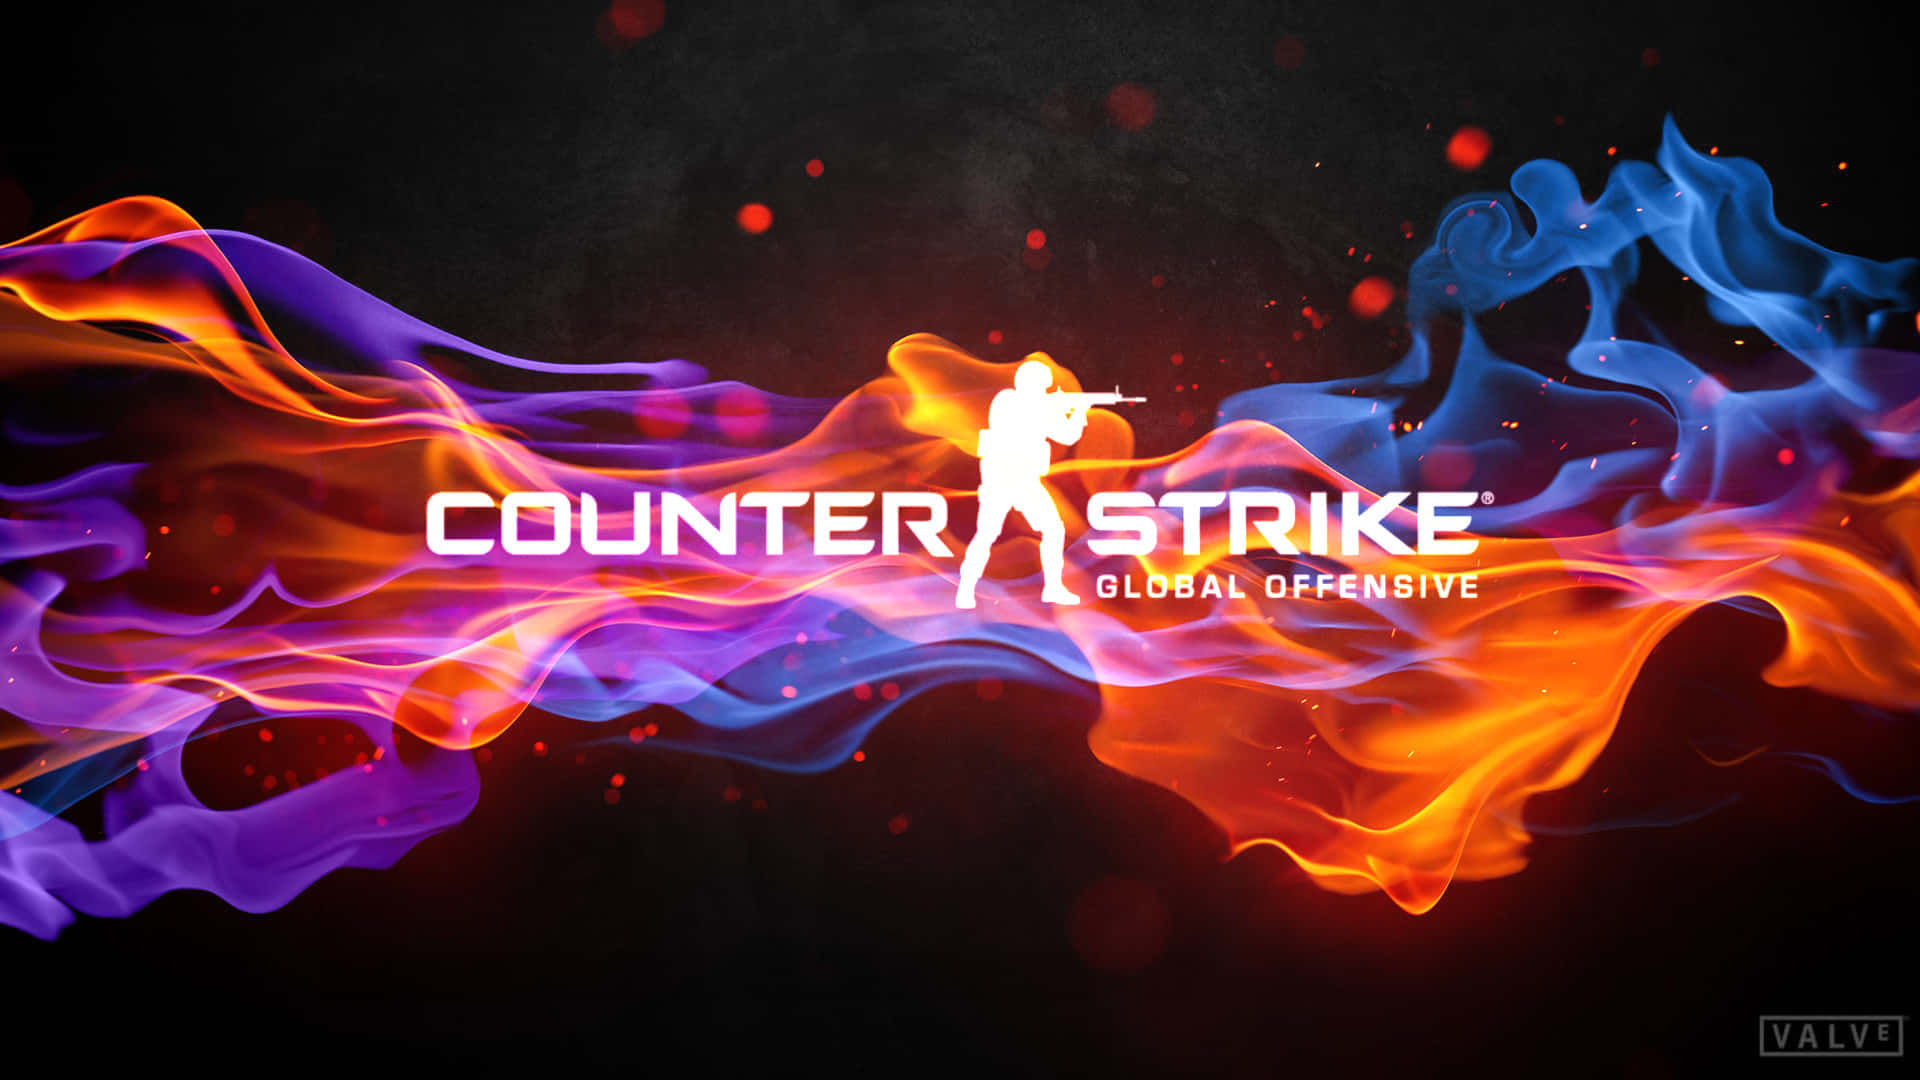 1920x1080counter-strike Global Offensive Hintergrund Mit Flammen